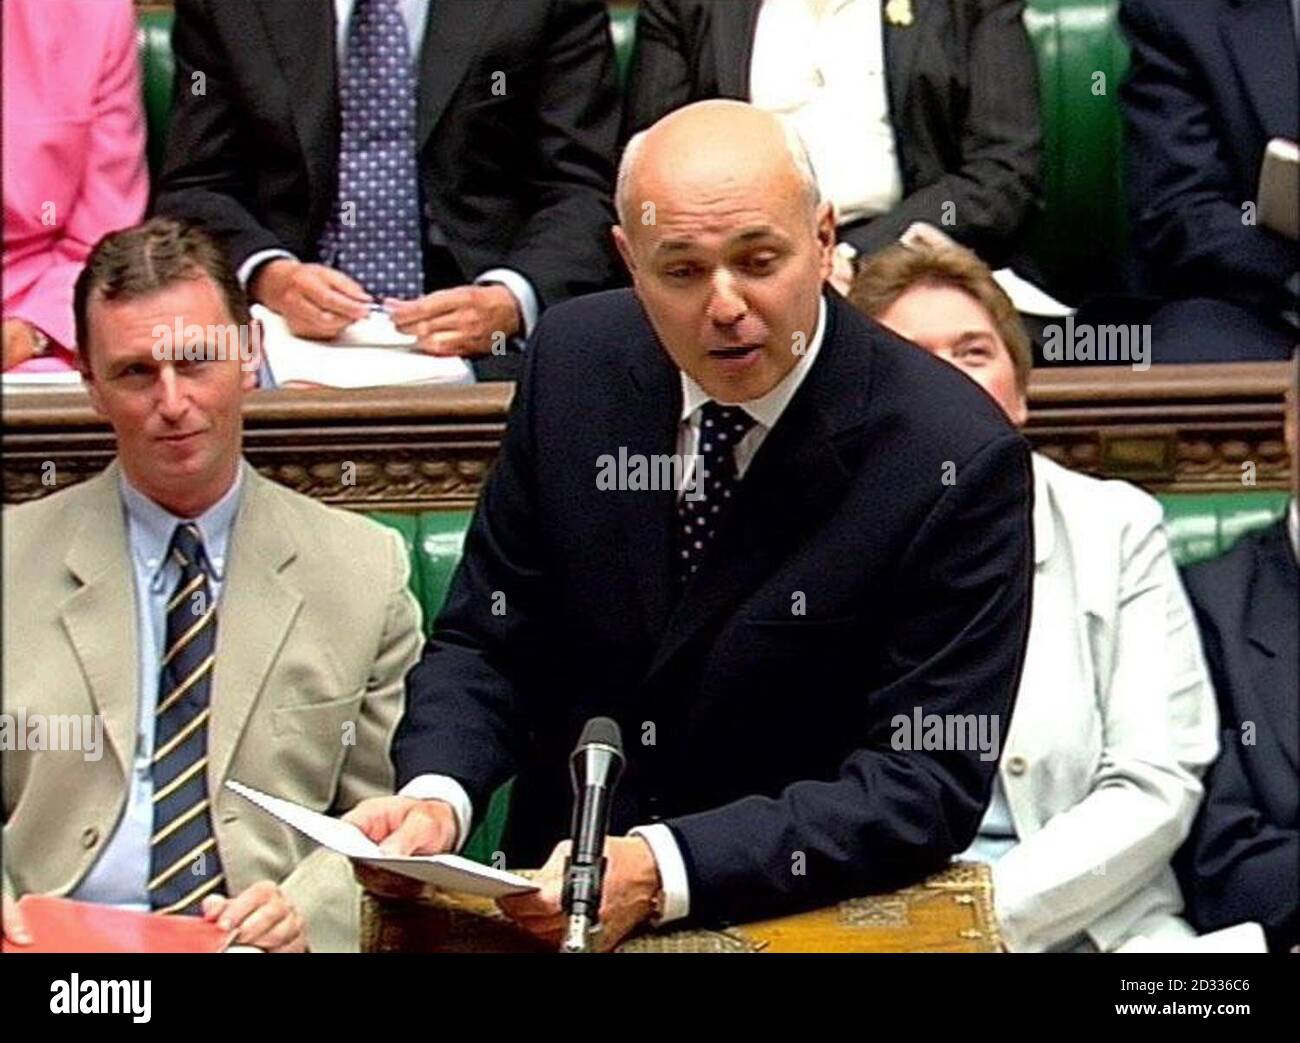 Le chef de l'opposition Iain Duncan Smith pendant l'heure des questions du premier ministre à la Chambre des communes, dans le centre de Londres. Banque D'Images